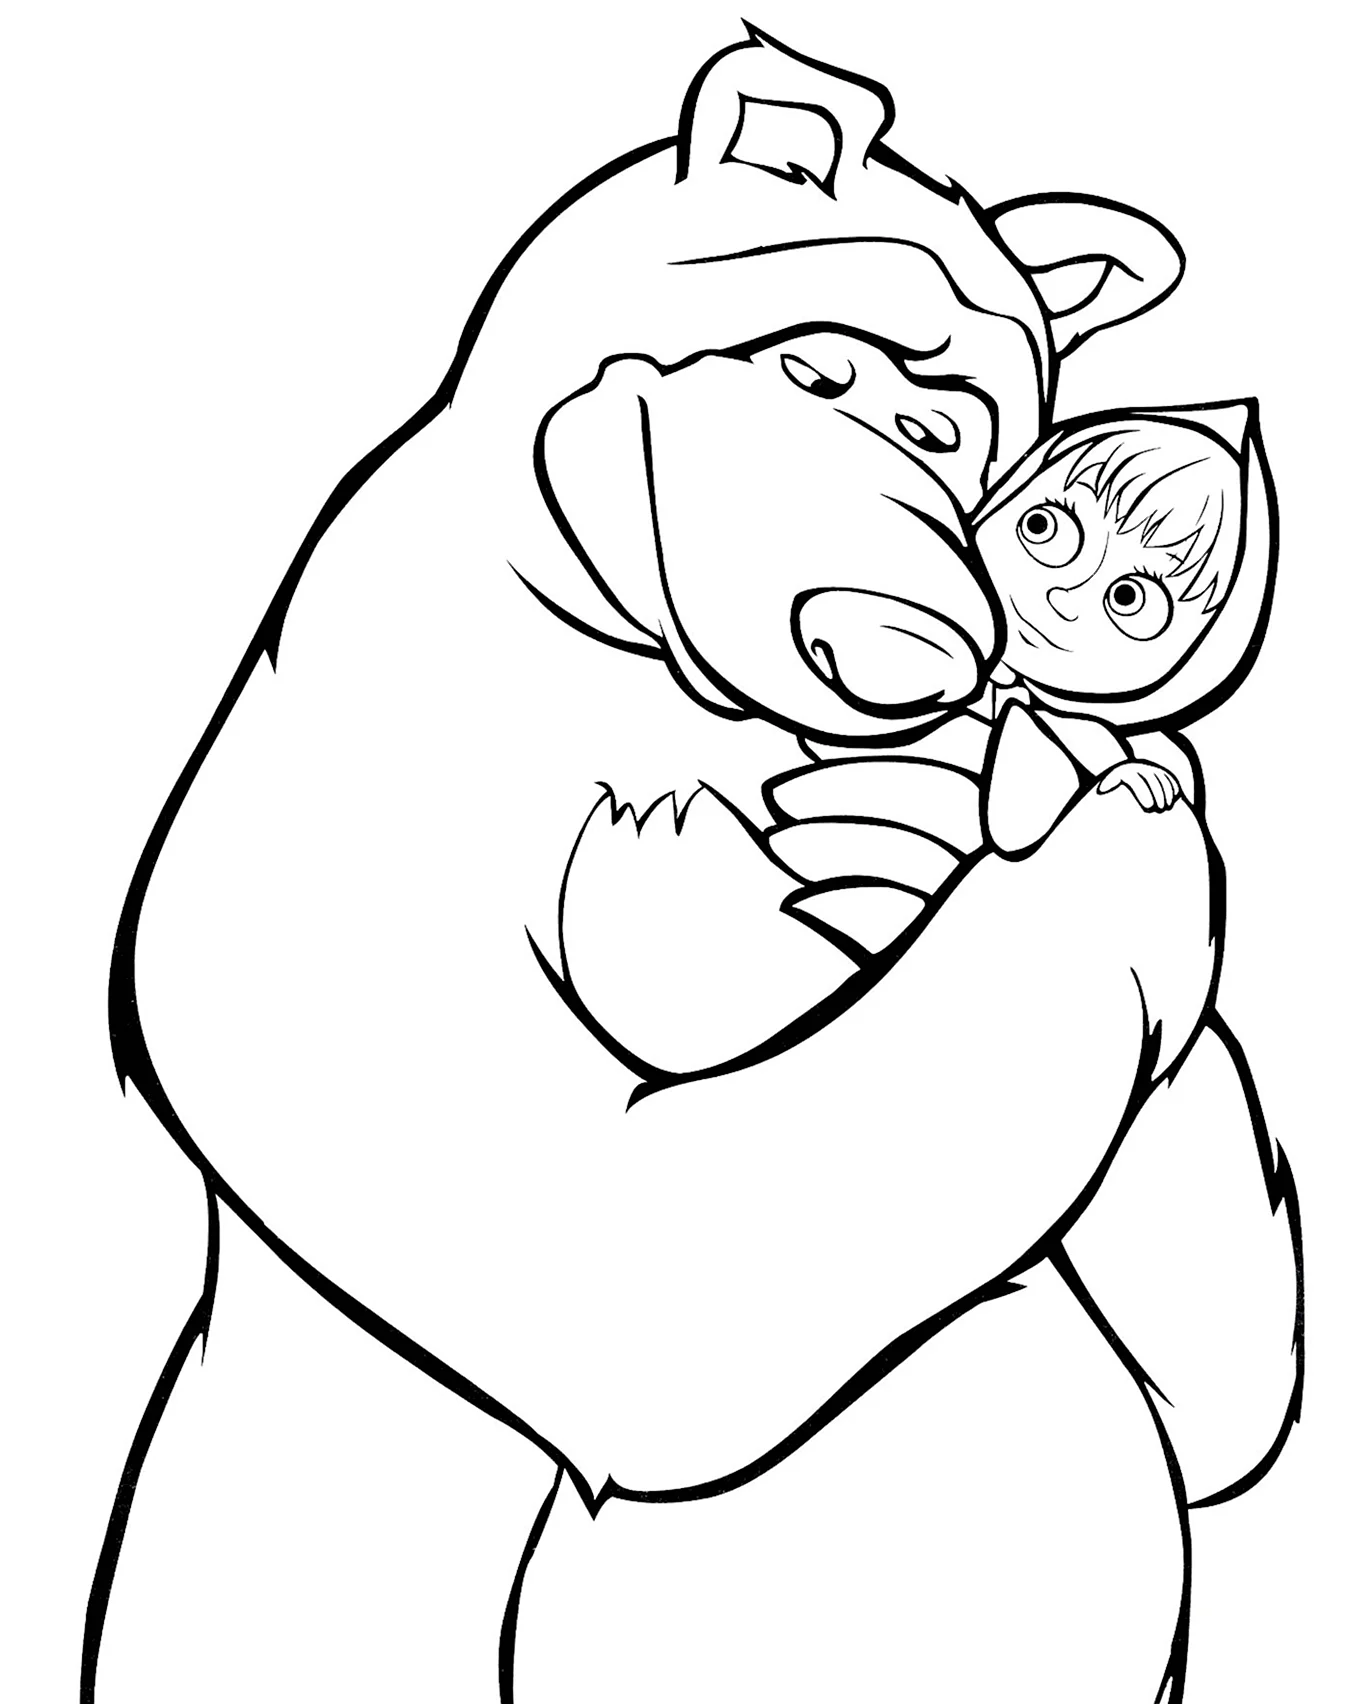 Маша и медведь рисунок раскраска. Для срисовки